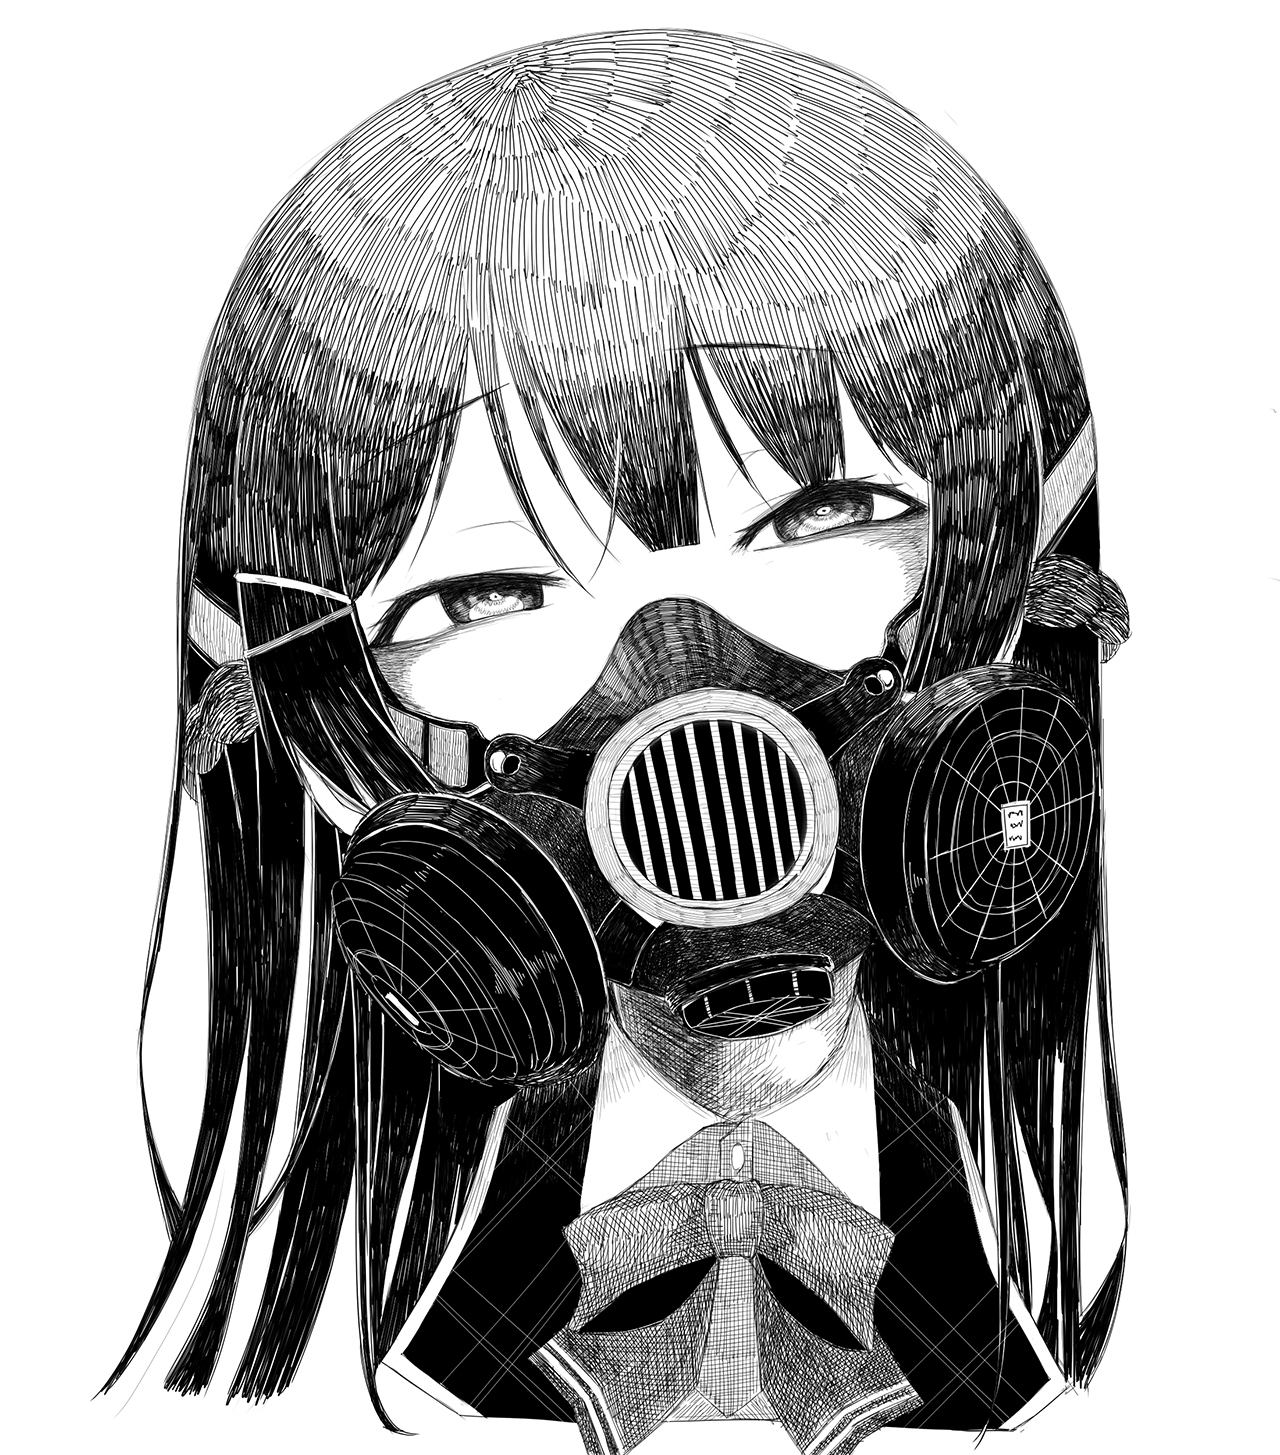 ガスマスク女子 イラスト集16枚 顔を覆う無機質な装置からただよう異形のオーラ